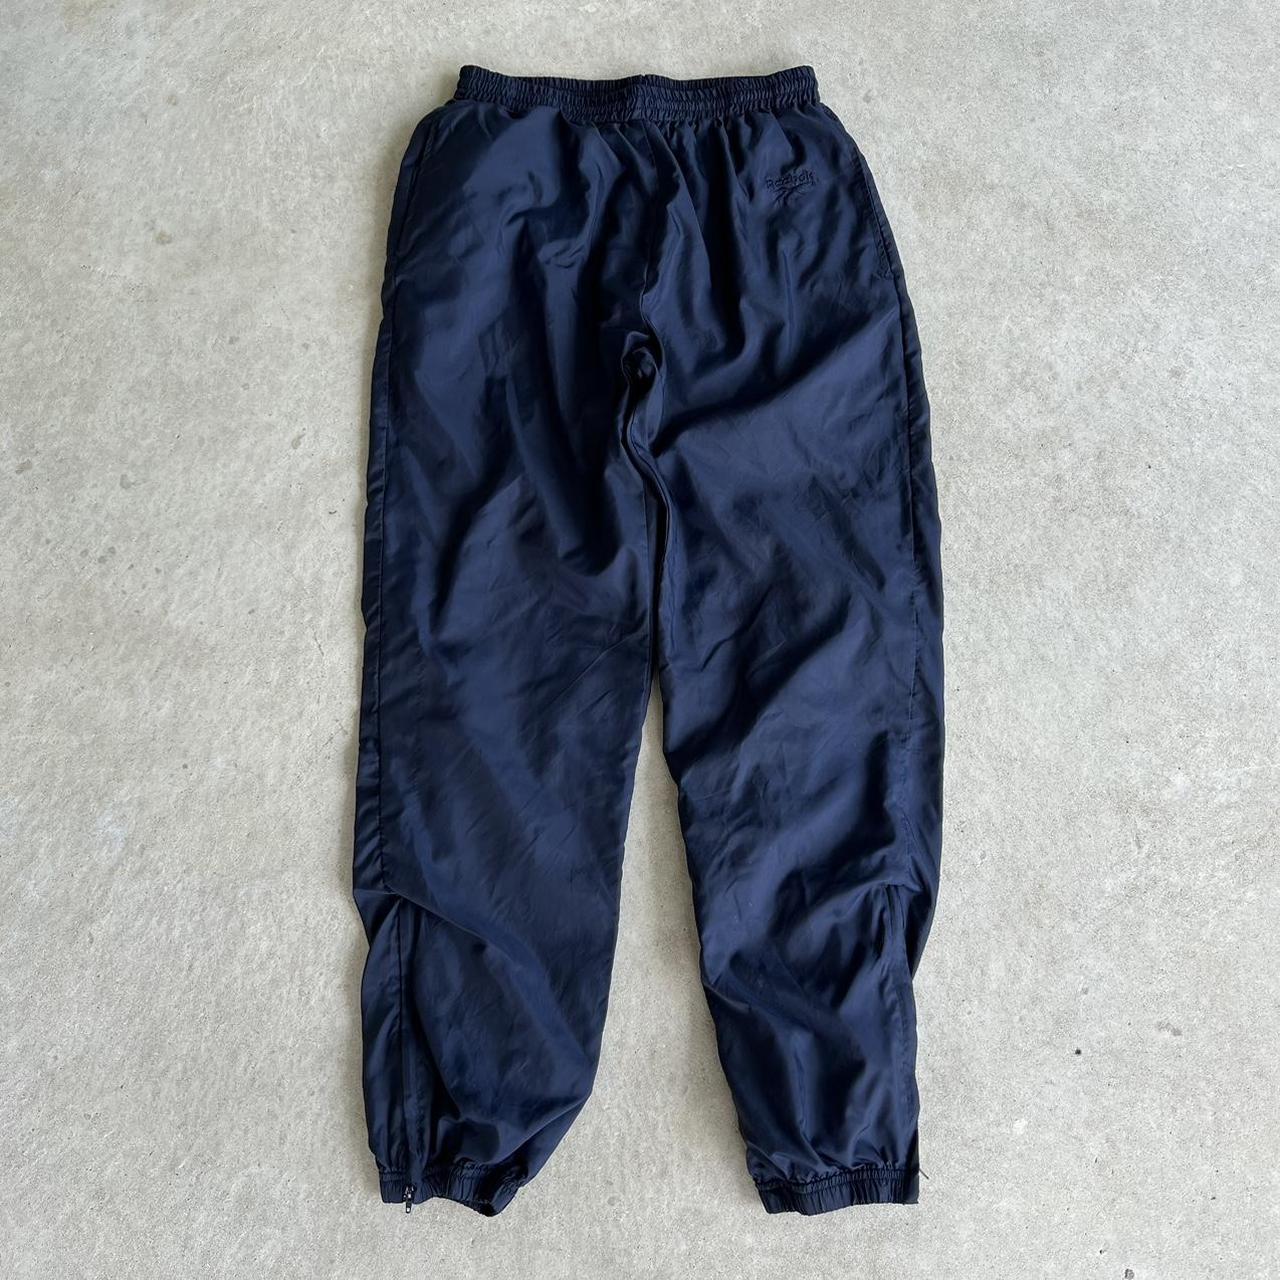 Reebok Men's Navy Trousers | Depop